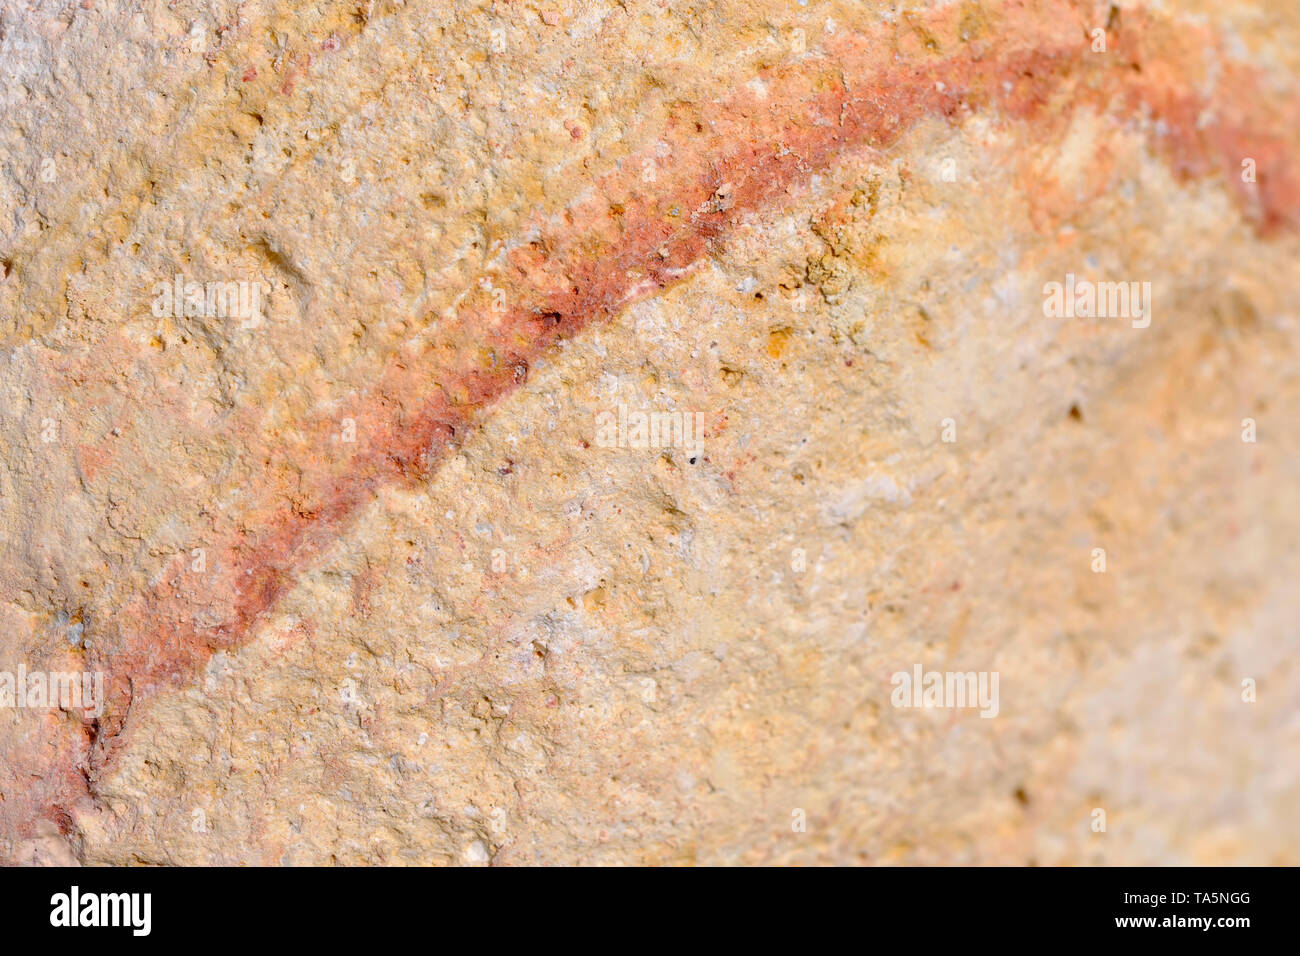 Decorative marble pebbles rainbow angelic stone close-up macro photo stone designer background Stock Photo